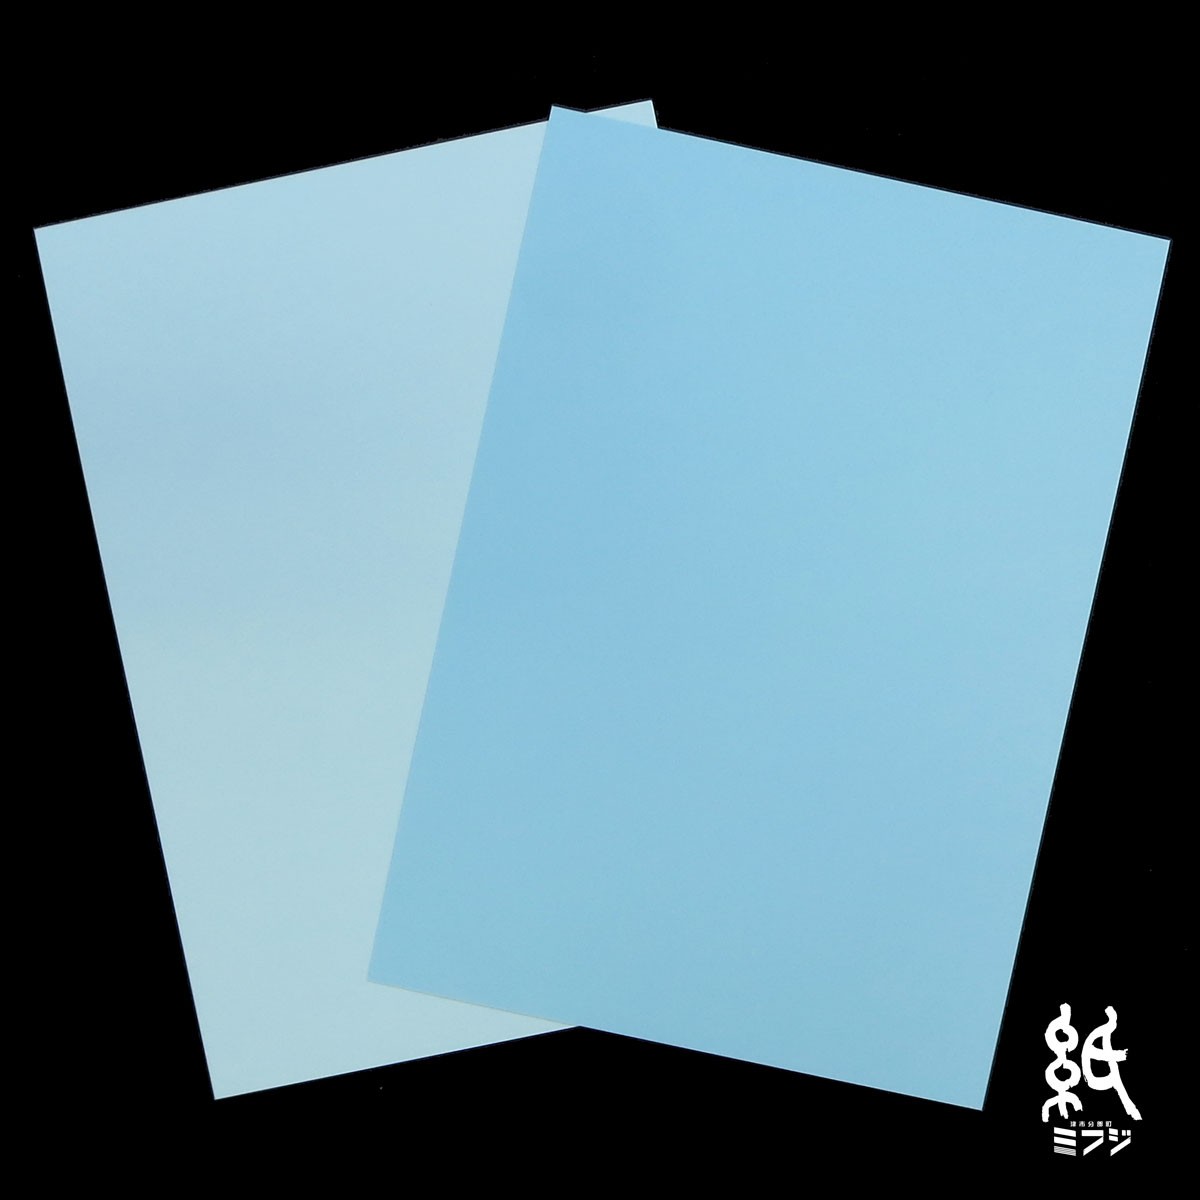  цвет прекрасное качество бумага Special толщина .A4 50 листов ввод синий серия 2 цвет ( вода / пустой )